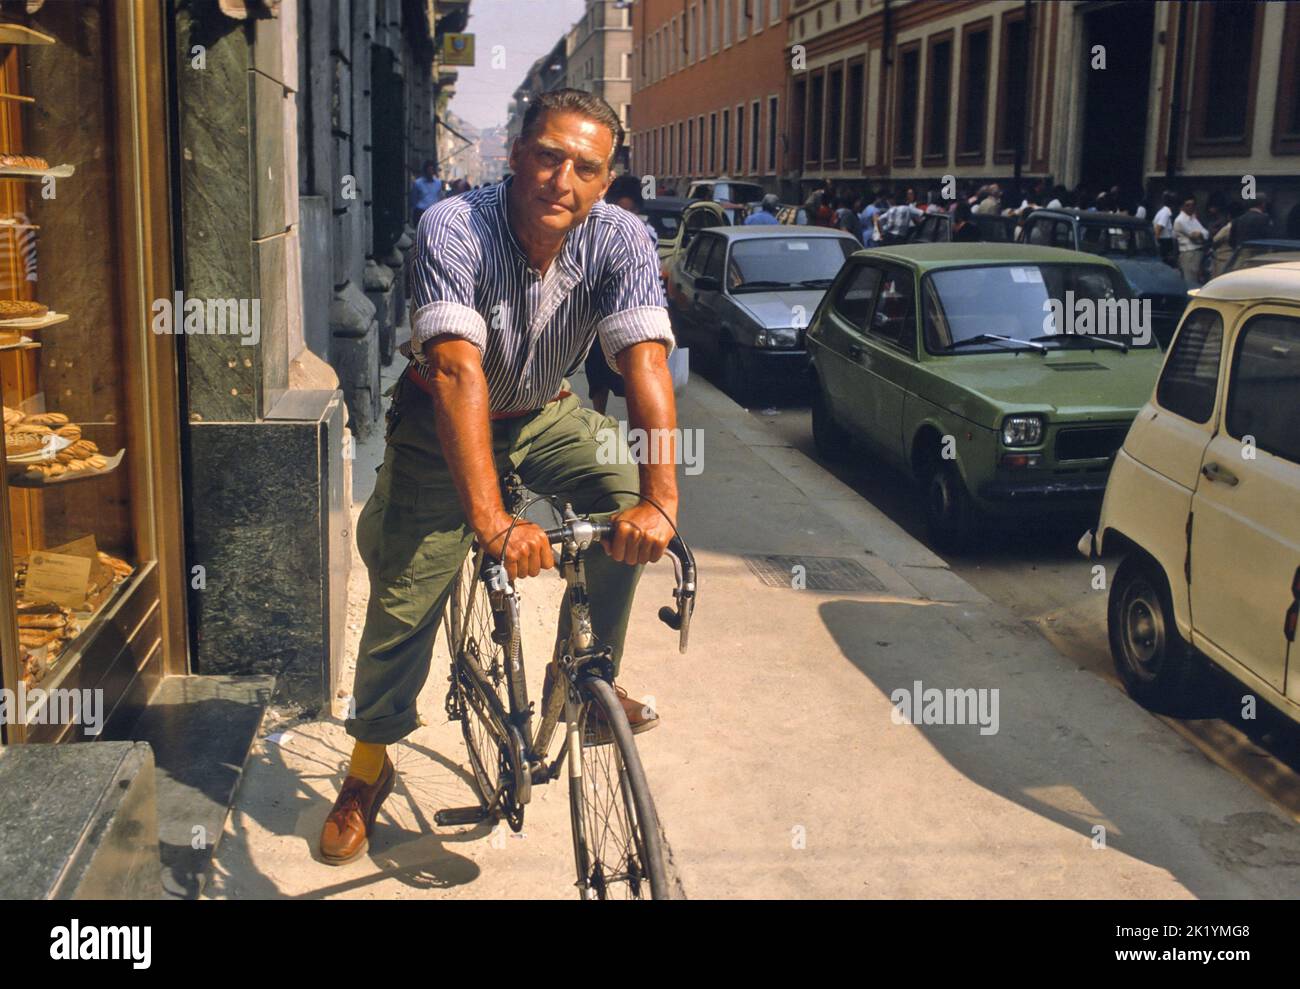 - Il pittore Emilio Tadini (1927-2002) in giro per la città in bicicletta (Milano, 1990)   - The painter Emilio Tadini (1927-2002) cycling around the city (Milan, 1990) Stock Photo